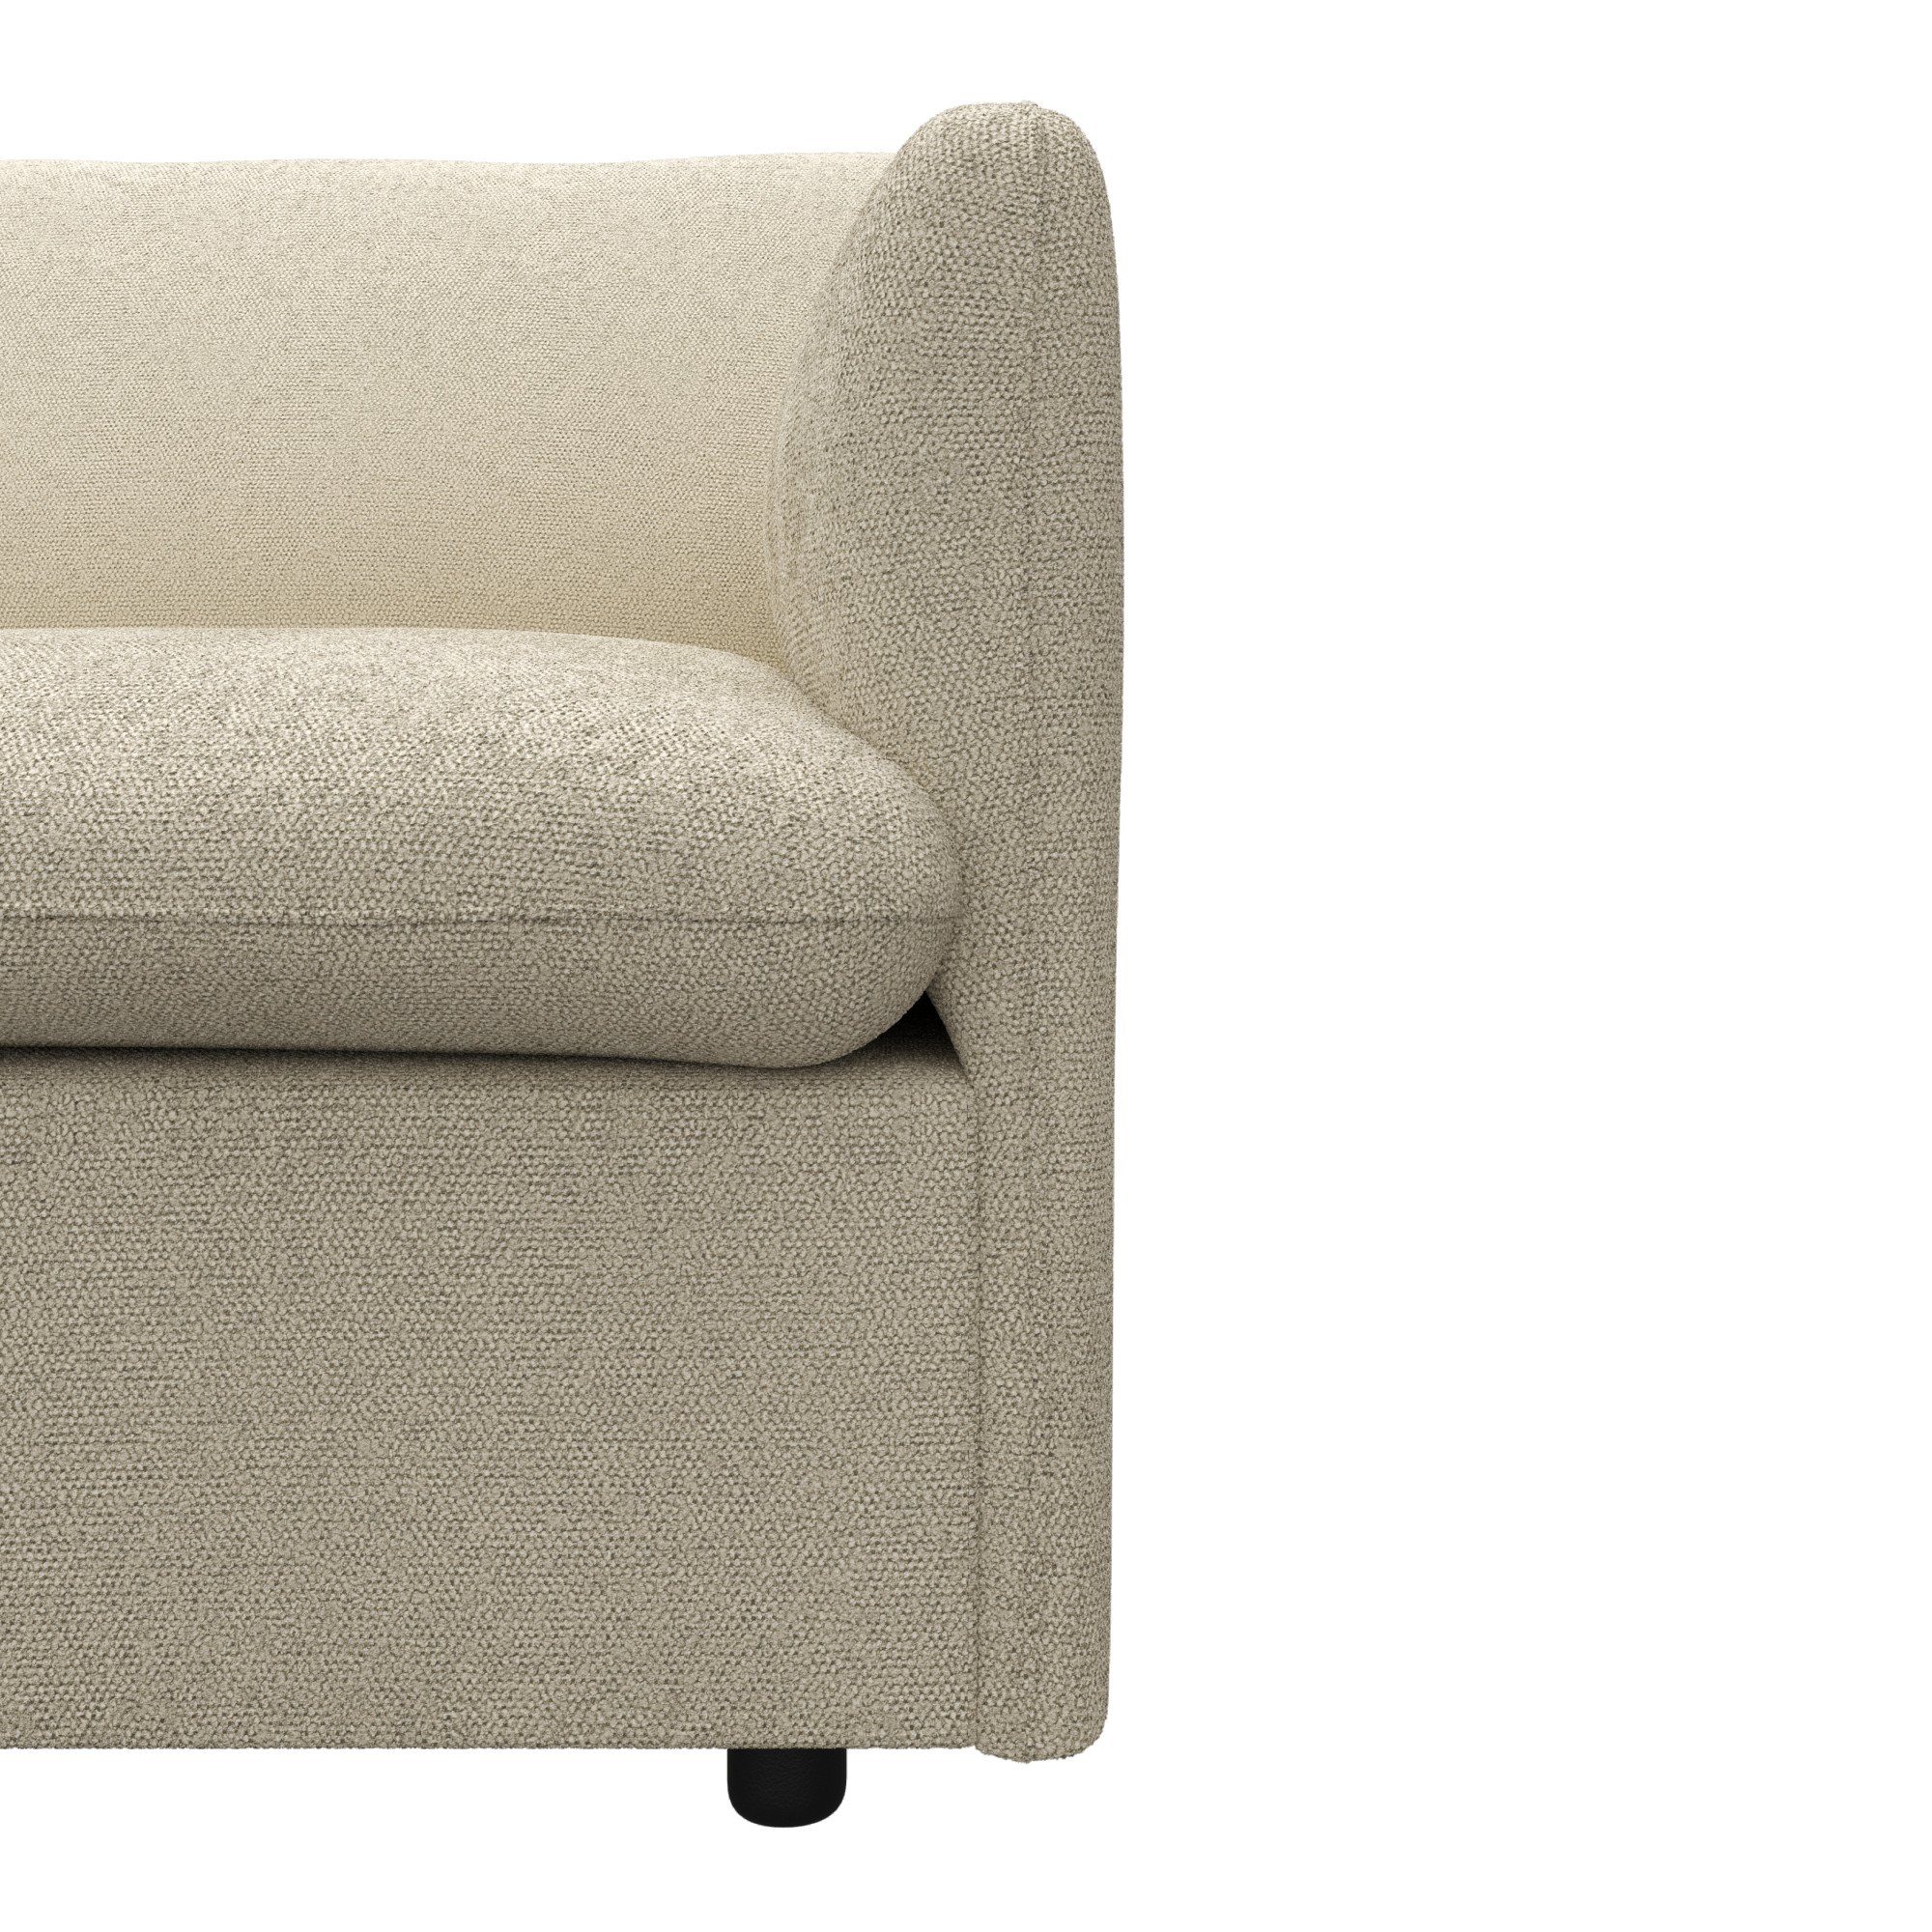 2-Sitzer in Imatra, attraktiver unterschiedliche Form, Sofakombinationen verfügbar andas